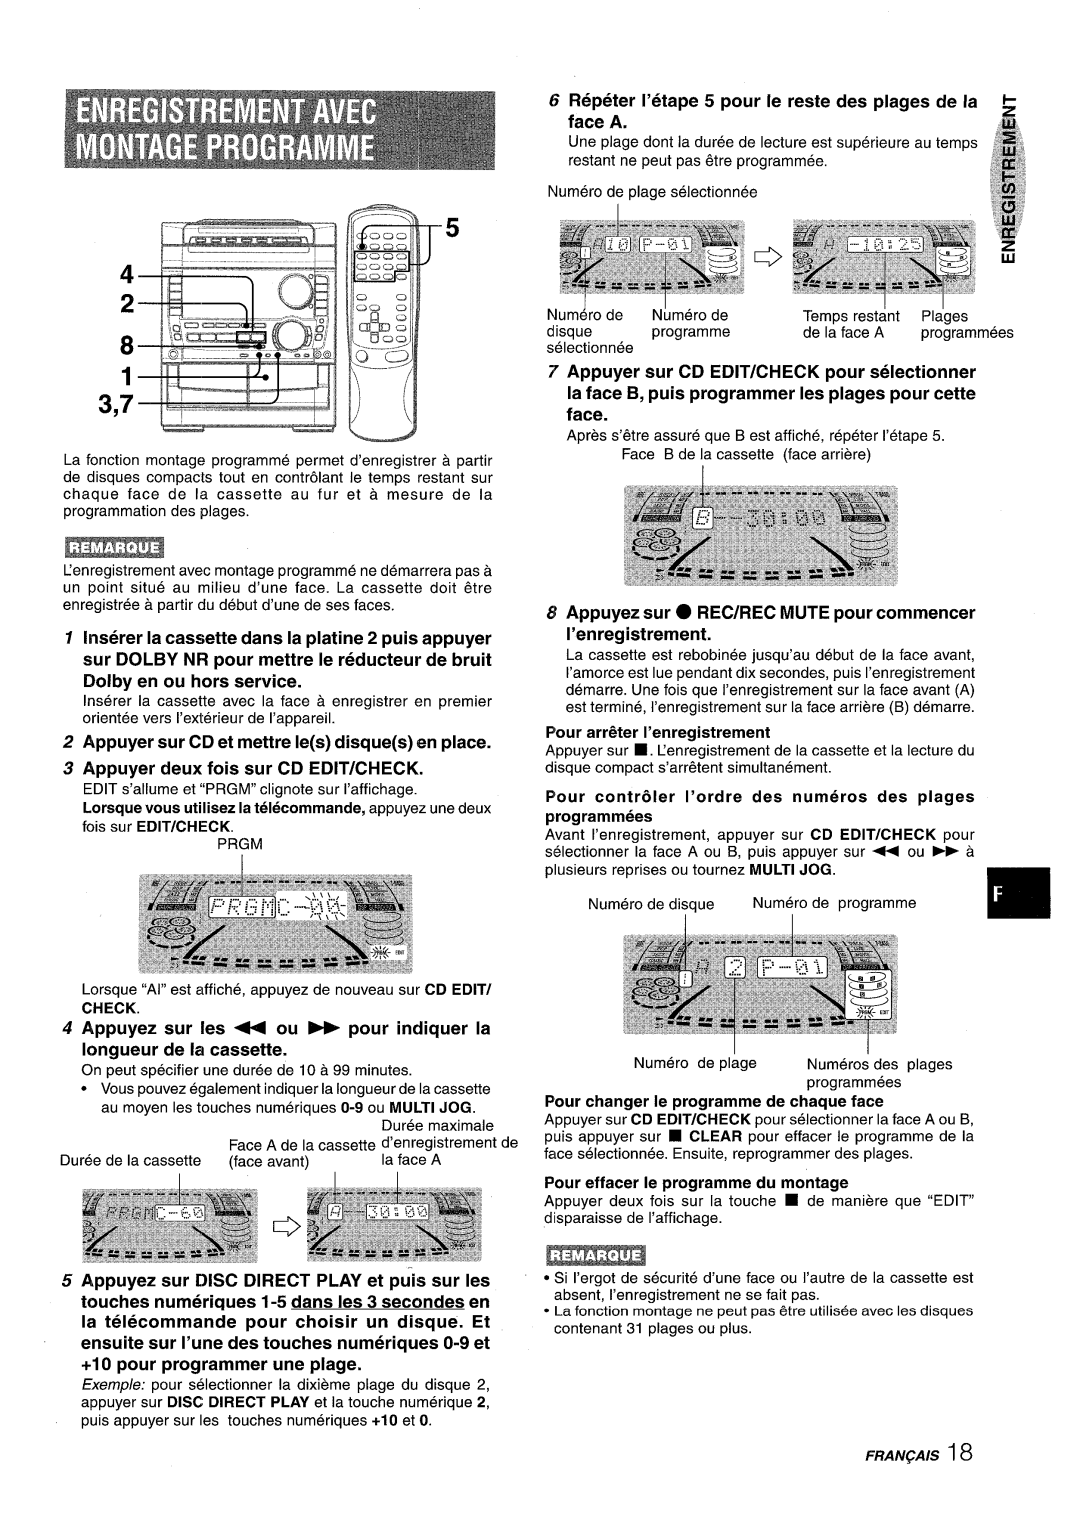 Sony NSX-A959 Repeter I’etape 5 pour Ie reste des plages de la, face A, Appuyer sur CD et mettre Ies disques en place 